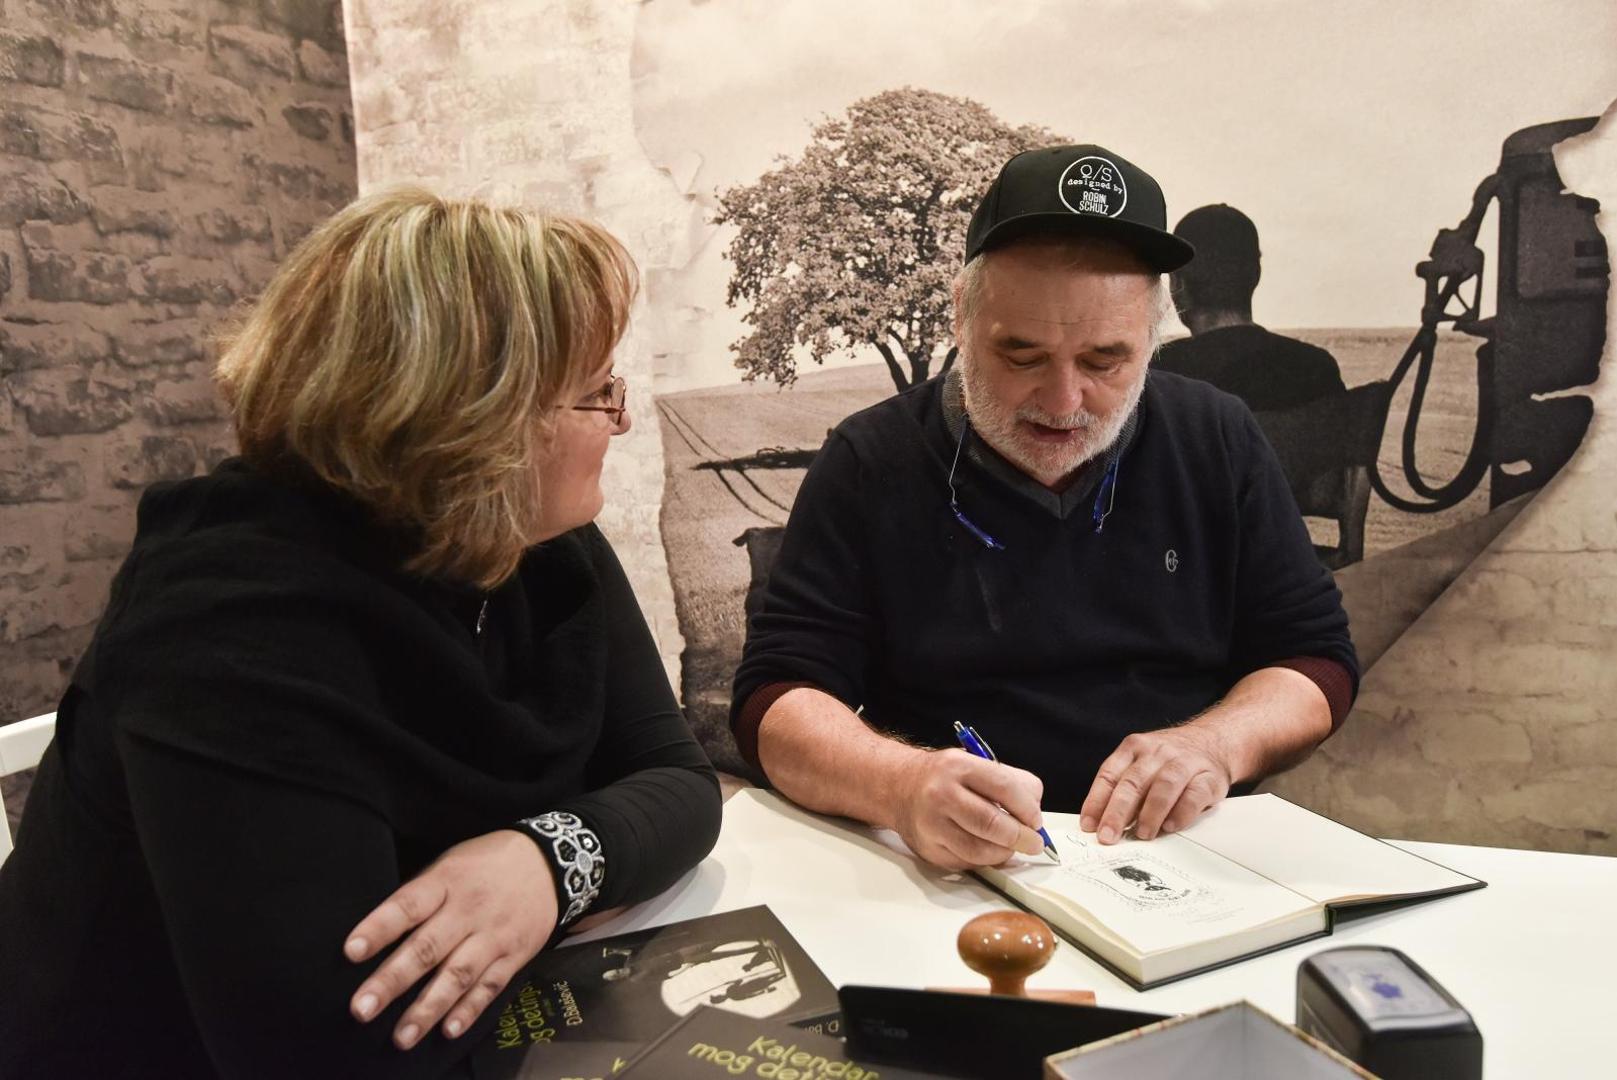 Na Zagrebackom velesajmu, u sklopu Interlibera, Đordje Balašević je brojnim obožavateljima potpisivao svoju novu knjigu "Kalendar mog djetinjstva".